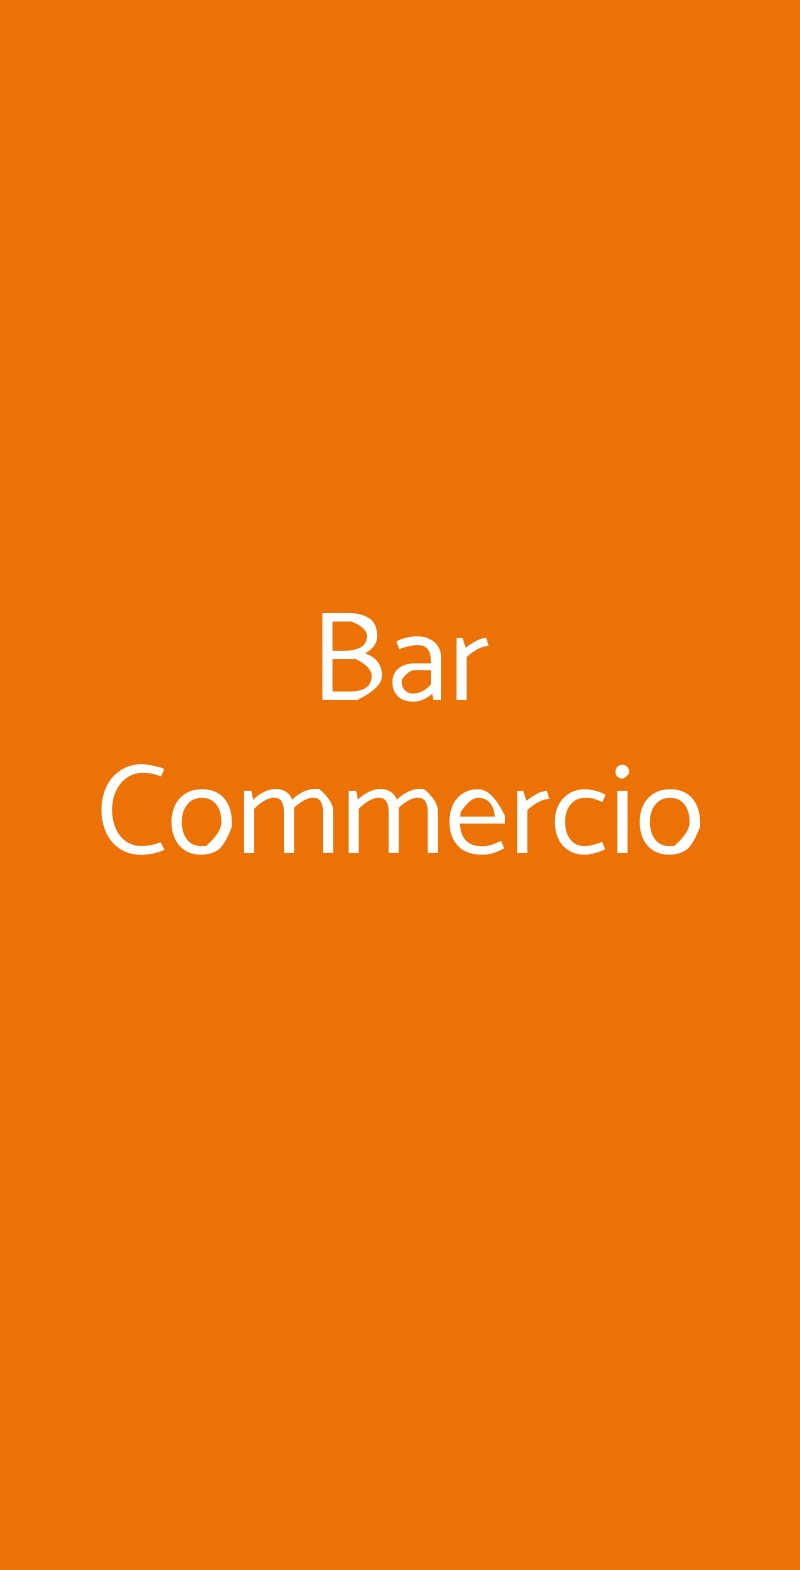 Bar Commercio Cavallino-Treporti menù 1 pagina